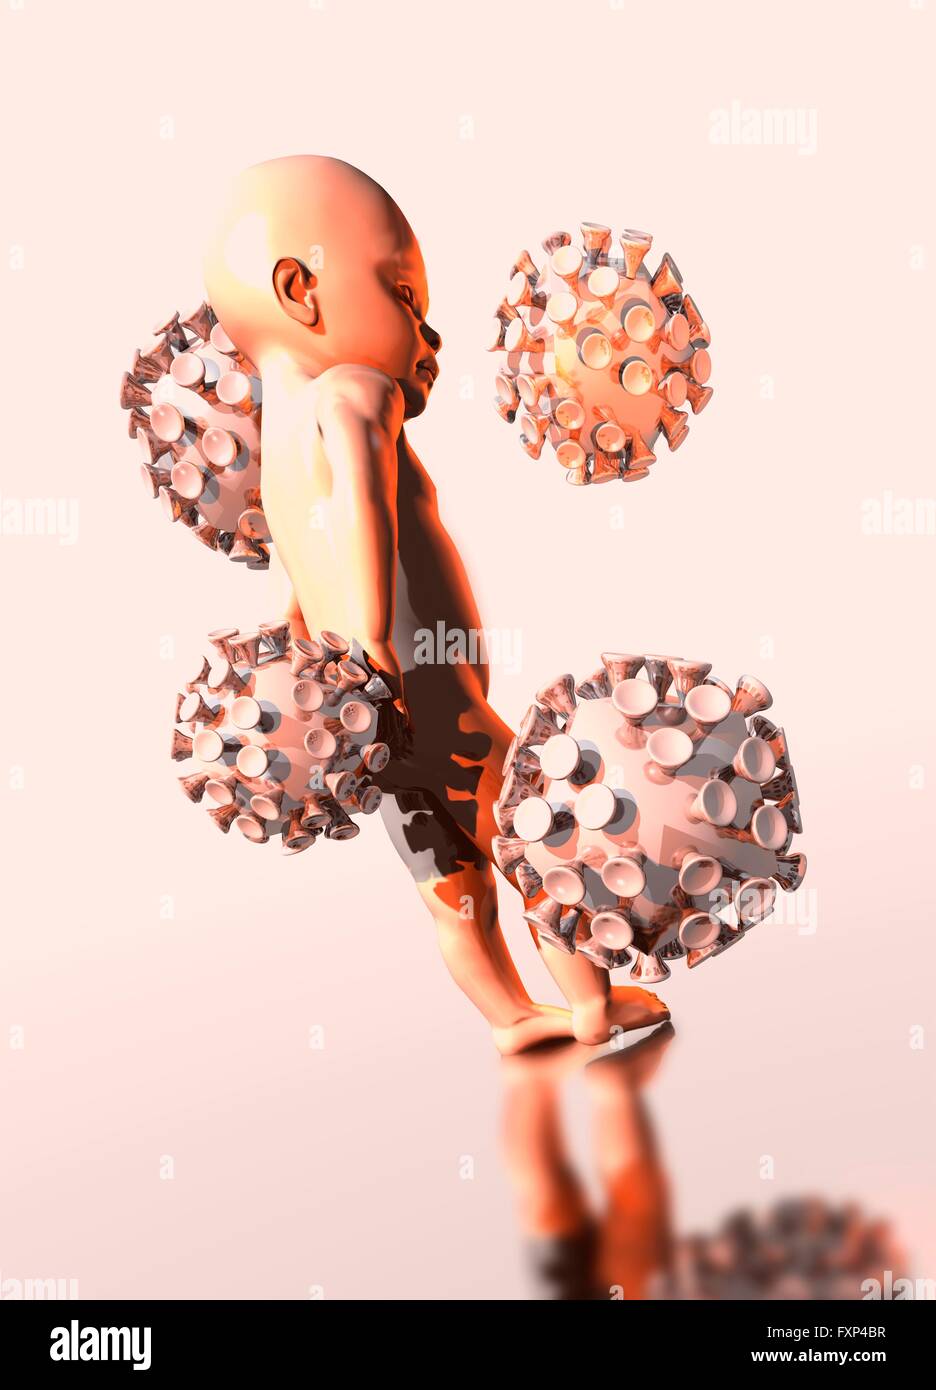 Infanzia AIDS (sindrome di deficienza immunitaria acquisita), illustrazione concettuale. Foto Stock